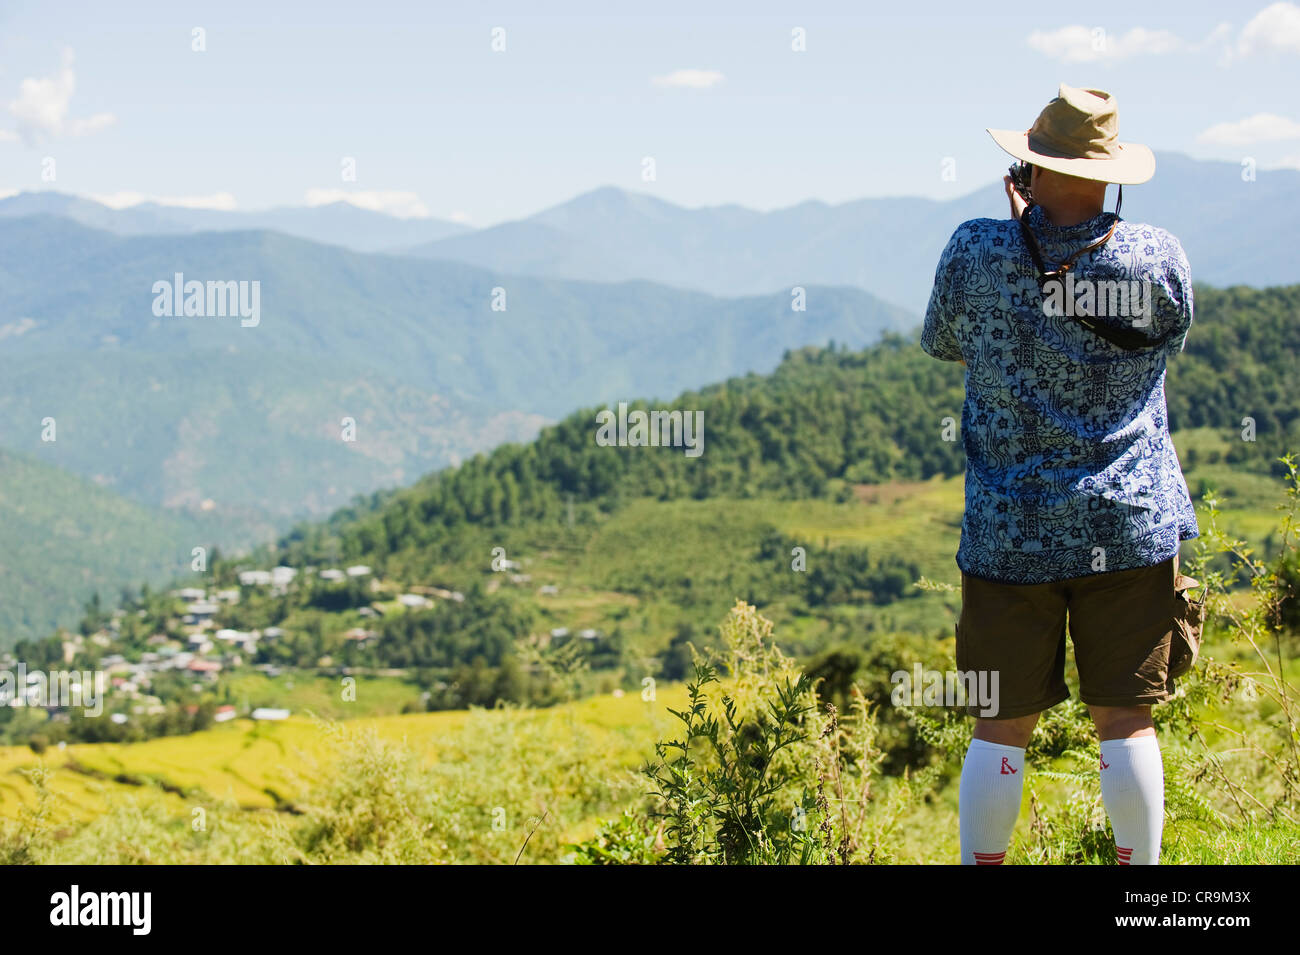 Prendre des photos de paysages touristiques, Bhoutan, Asie Banque D'Images